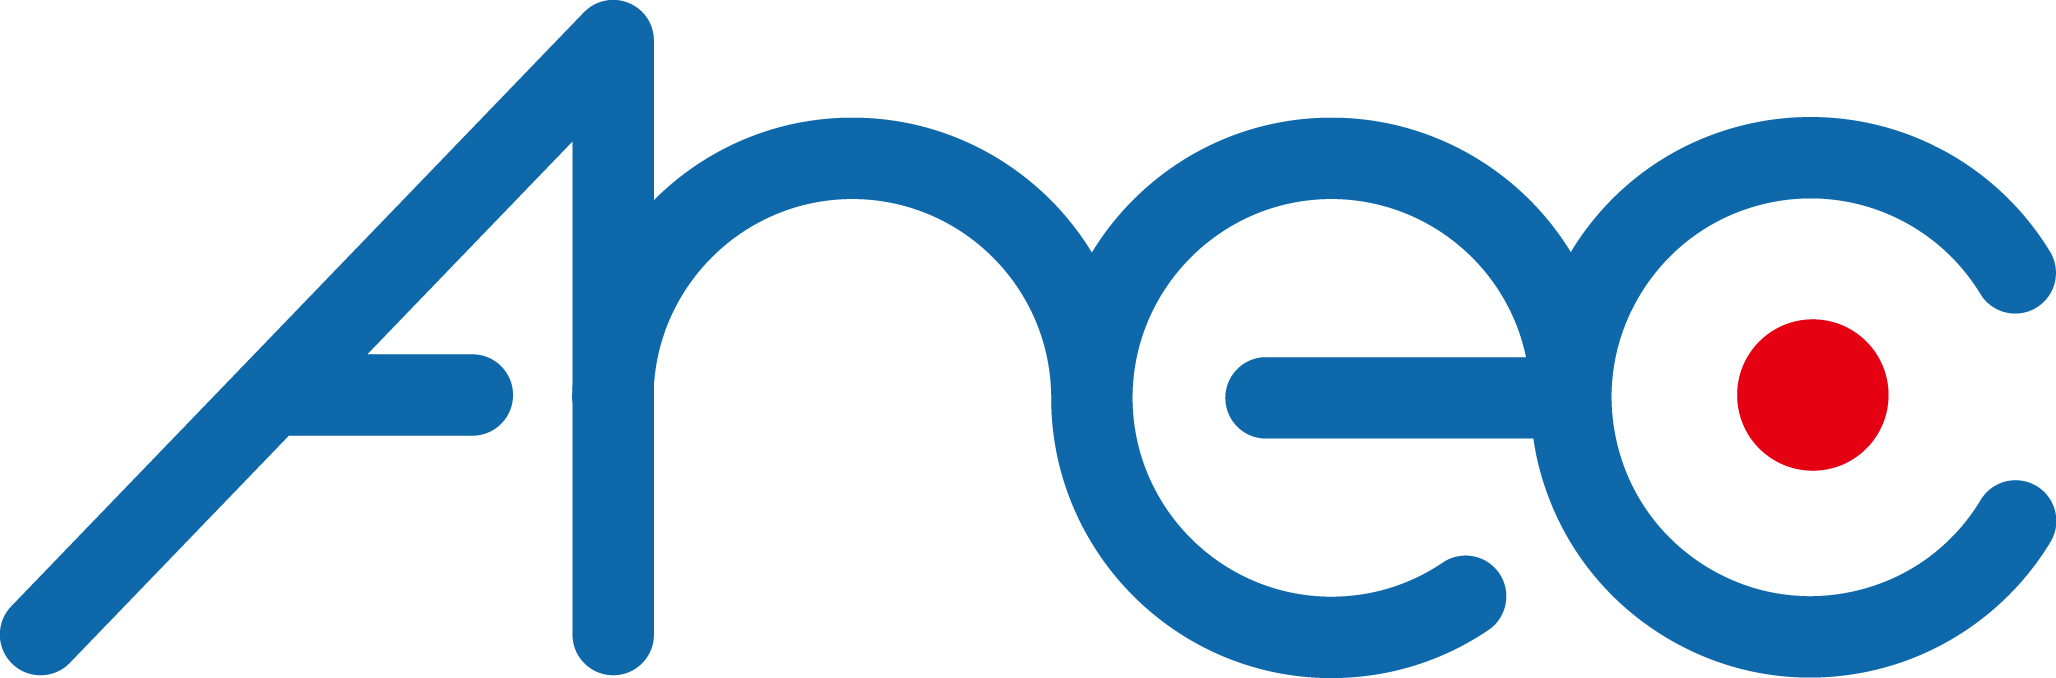 奇勤科技股份有限公司-Logo